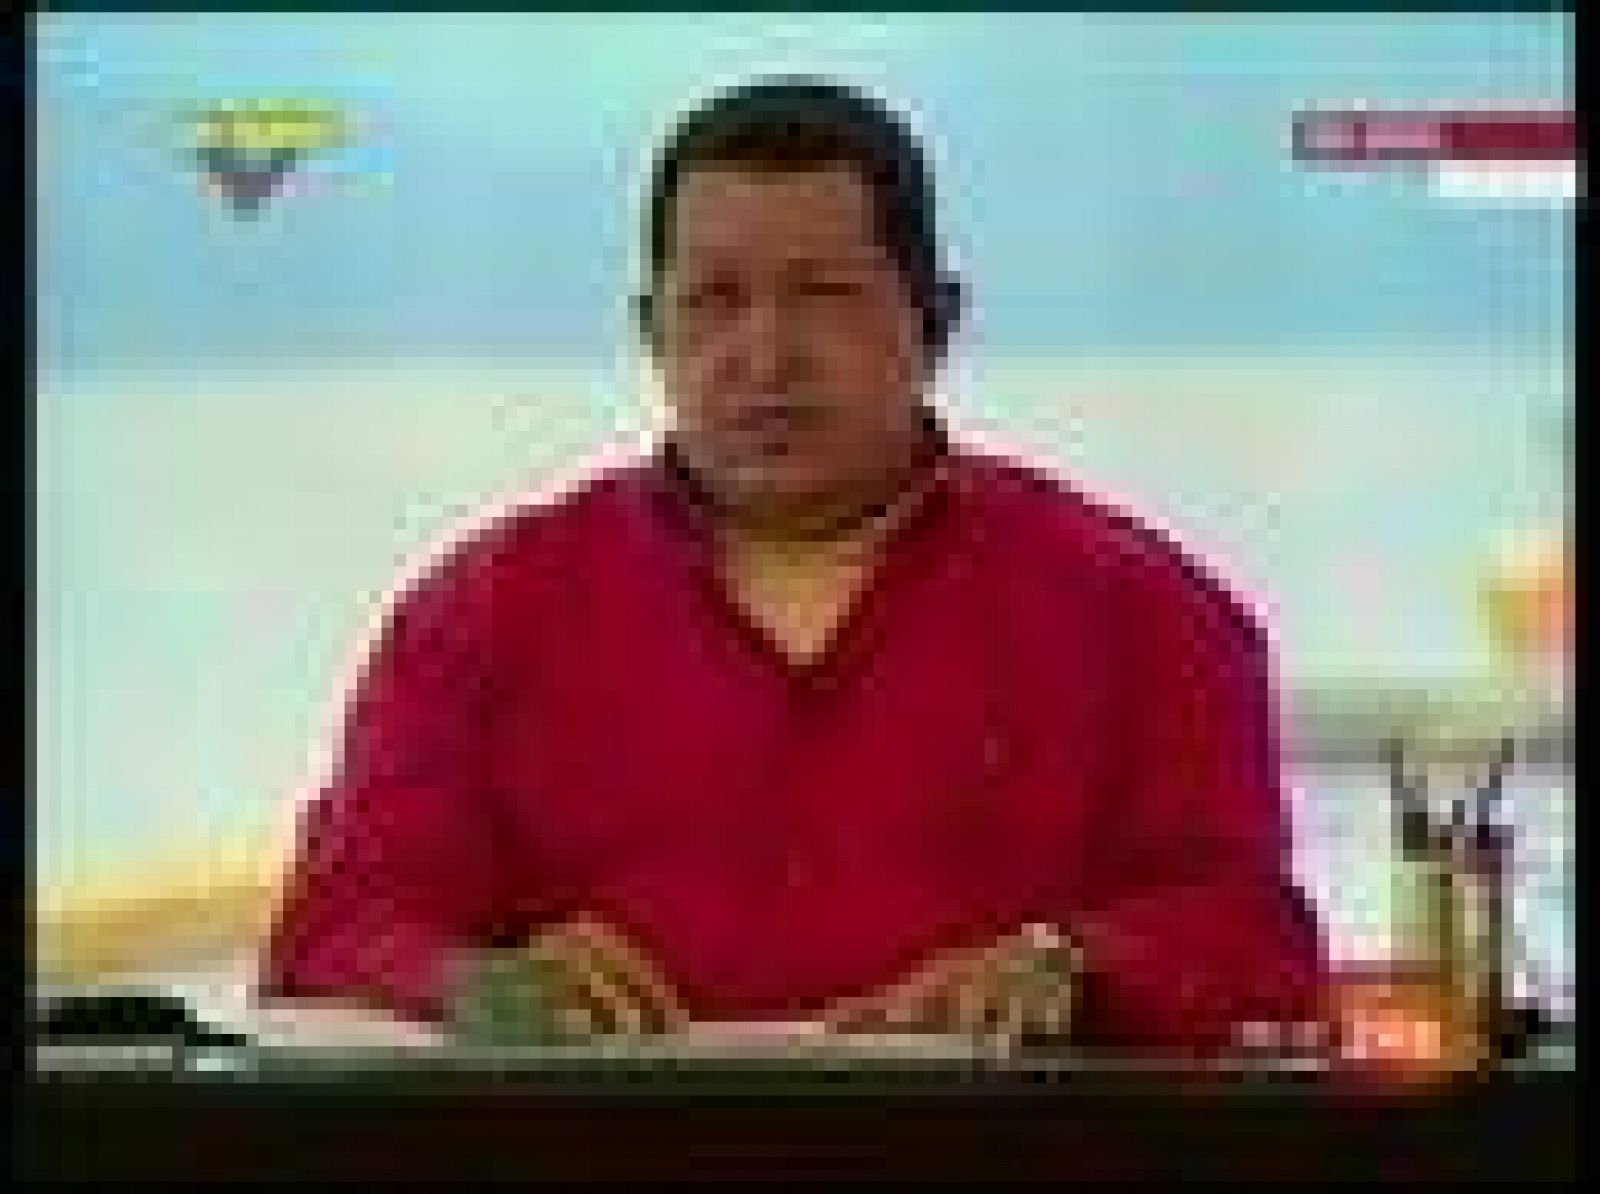 El presidente de Venezuela, Hugo Chávez ha ordenado la toma militar de los puertos de Maracaibo y Puerto Cabello, los más importantes del país. Es un pulso más a los gobernadores de Zulia y Carabobo donde están los puertos que ha ordenado transferir al poder central (15/03/09).
